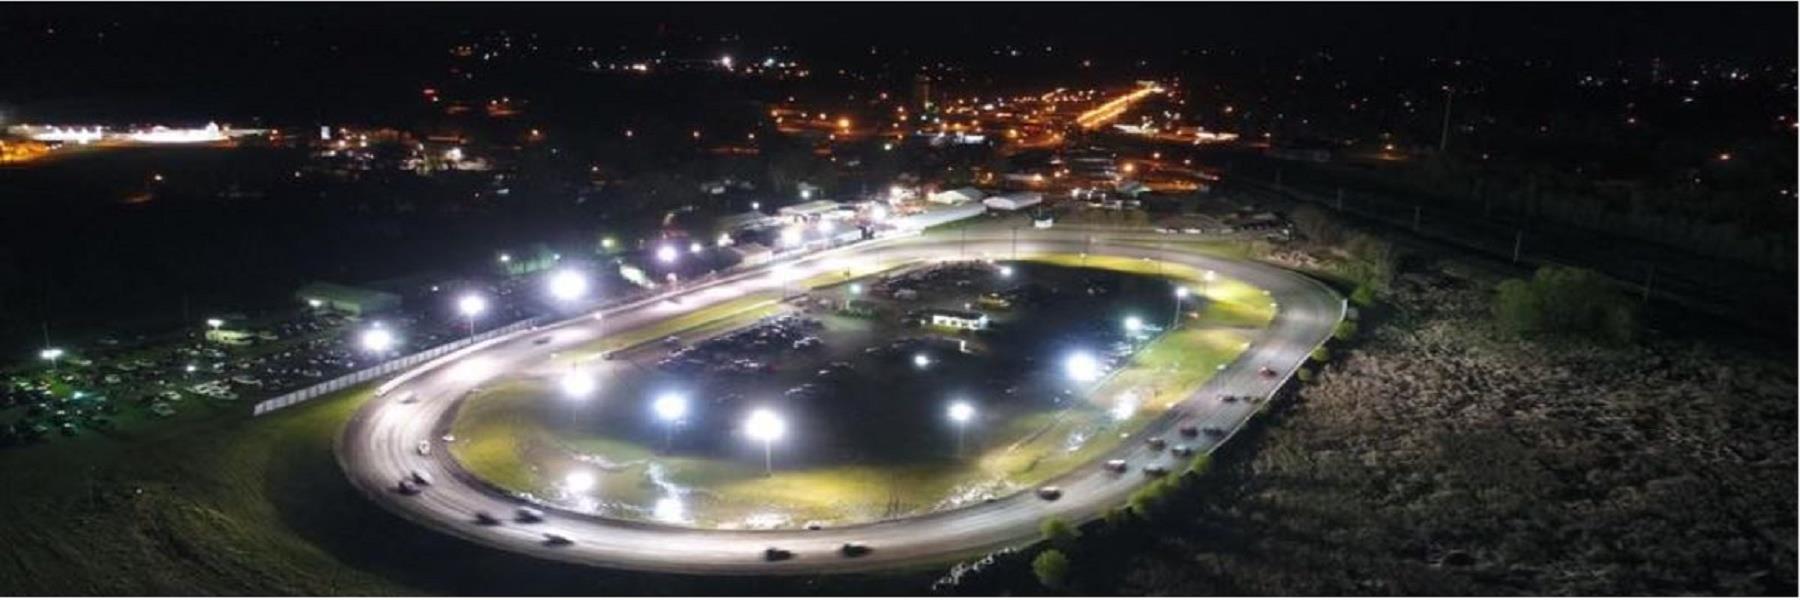 5/27/2022 - Fiesta City Speedway